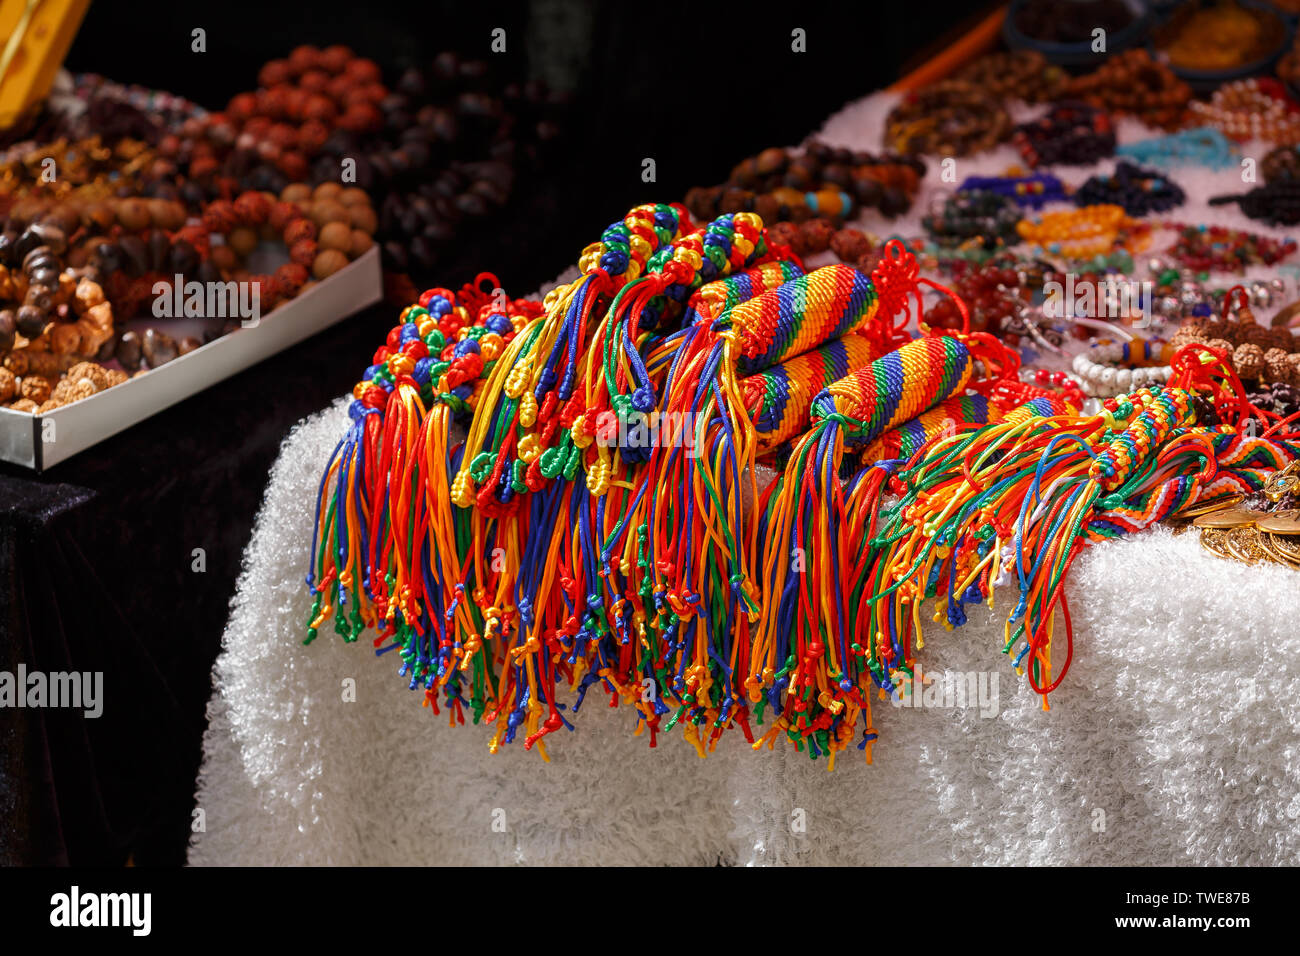 Coloridos colgantes en la pantalla para la venta de un mercado. Accesorios, joyas, budismo, artesanía, arte, hechos a mano, hilo, hilo, lana, tejidos de colores. Foto de stock